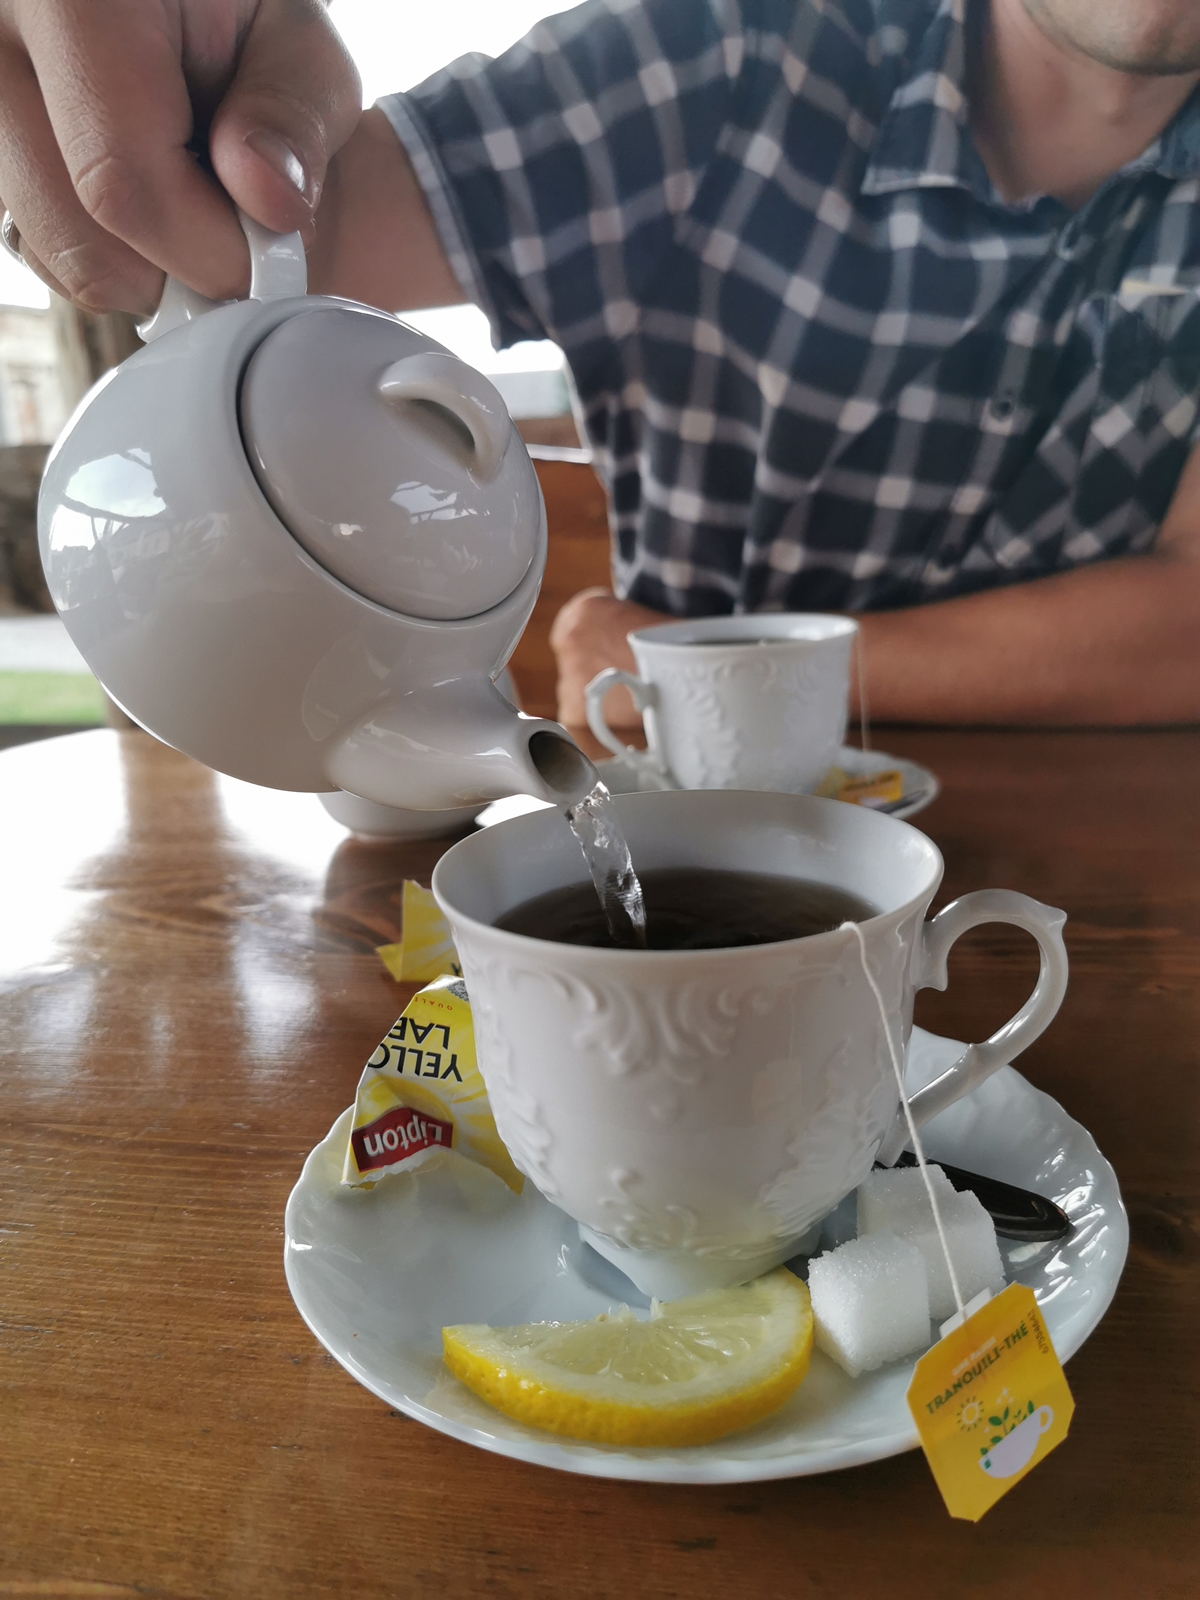 Męska dłoń nalewająca herbatę z imbryczka do filiżanki.